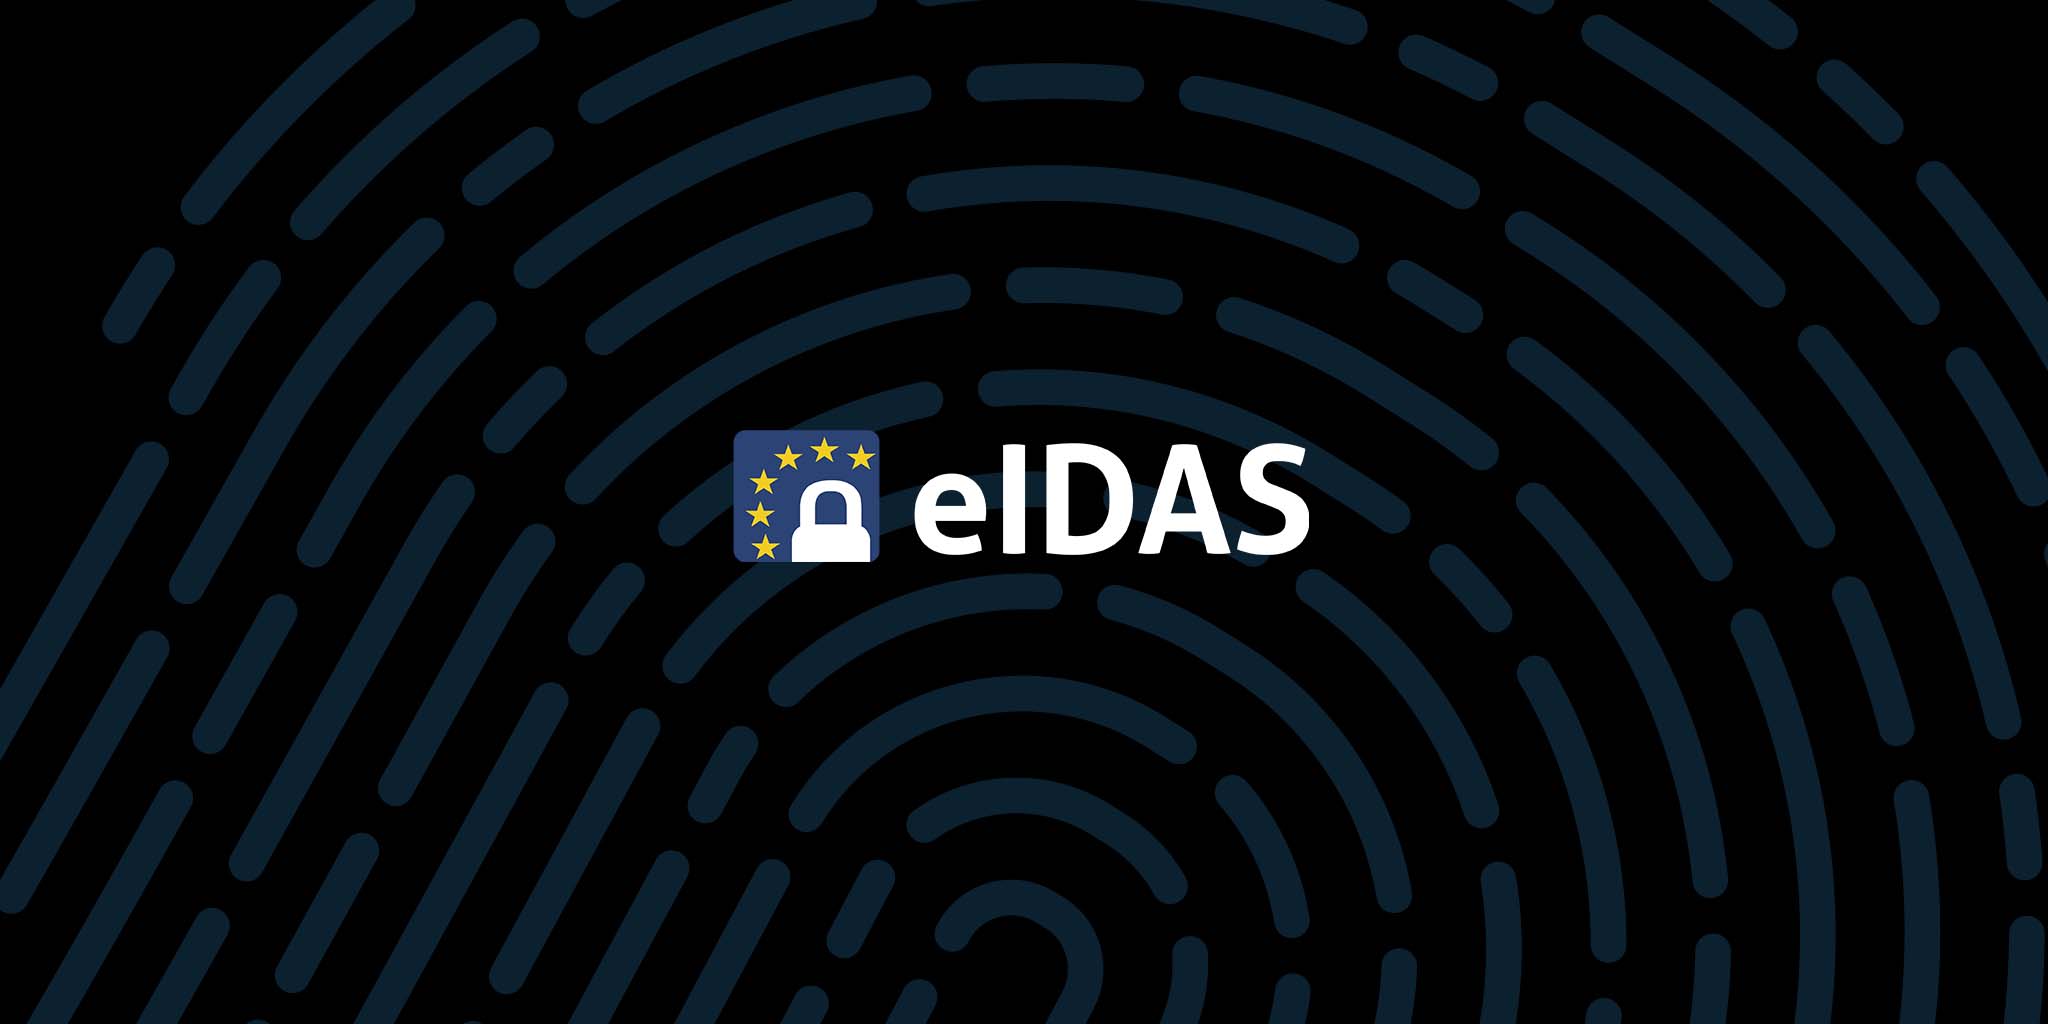 eIDAS logotyp mot en mönstrad svart bakgrund